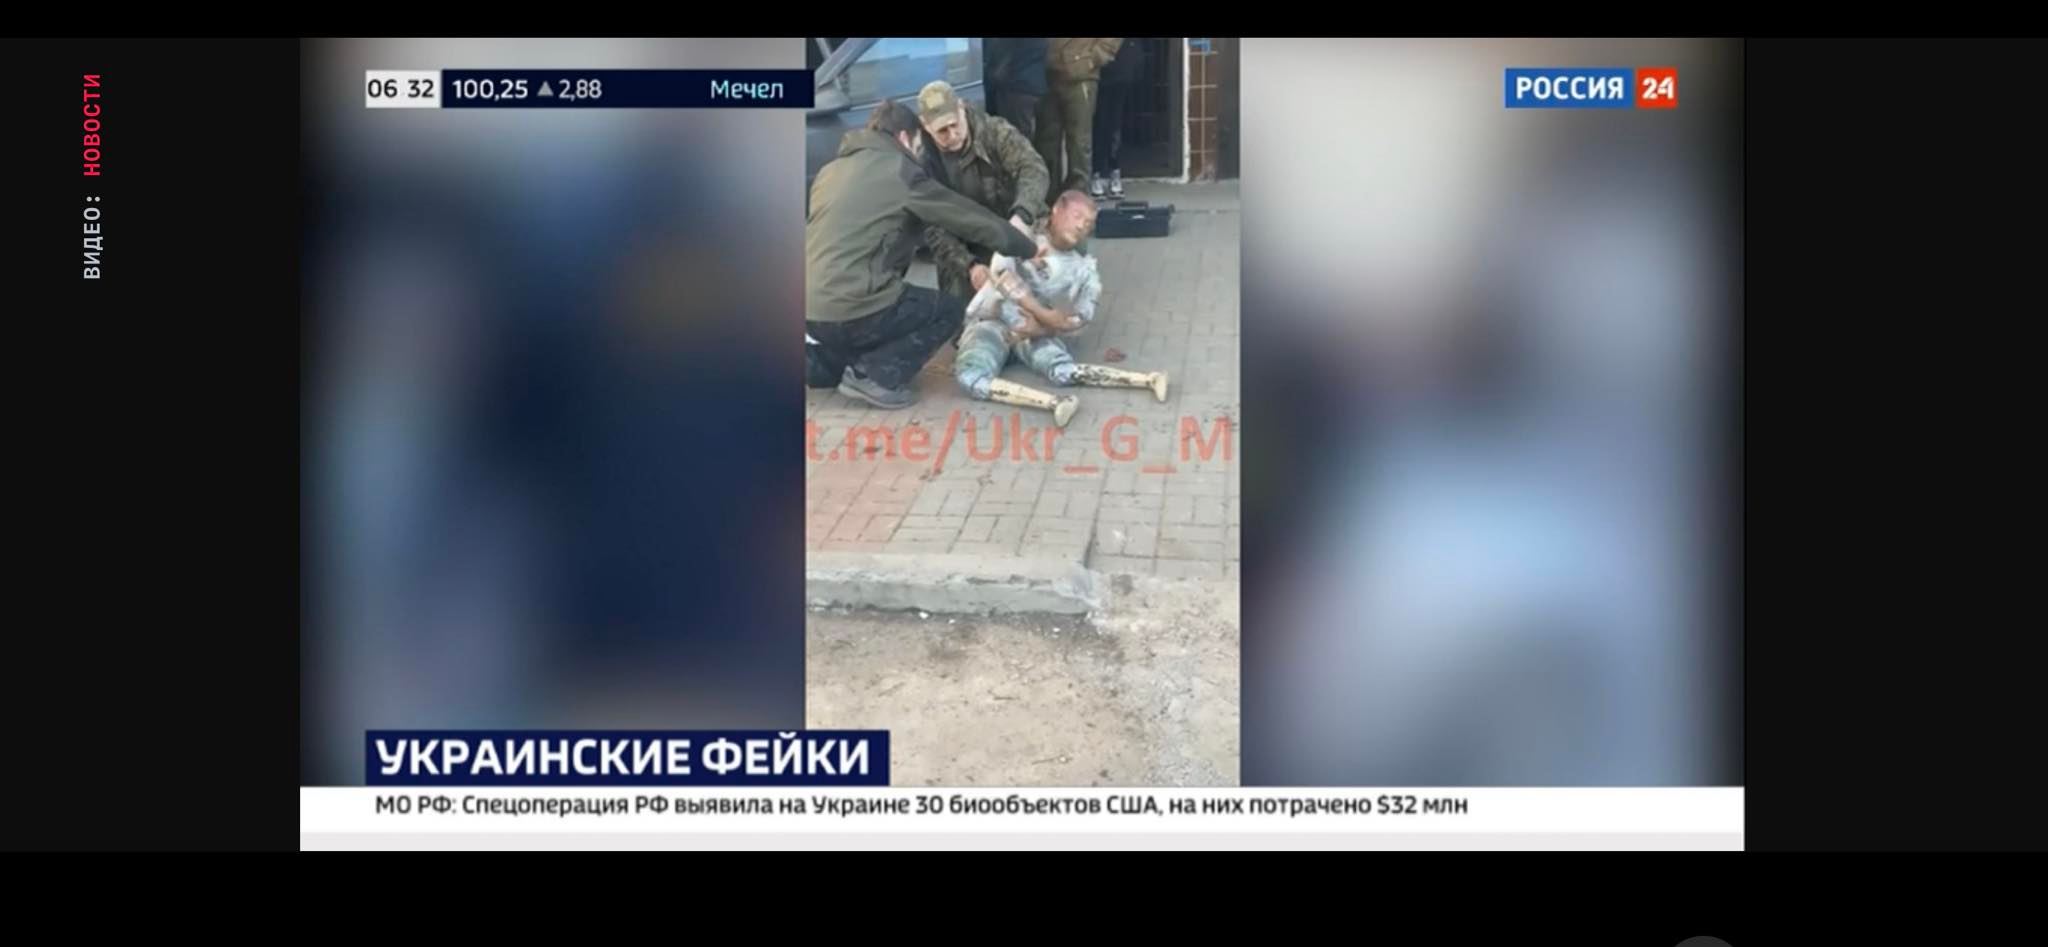 Телеграмм война на украине без цензуры смотреть онлайн фото 81